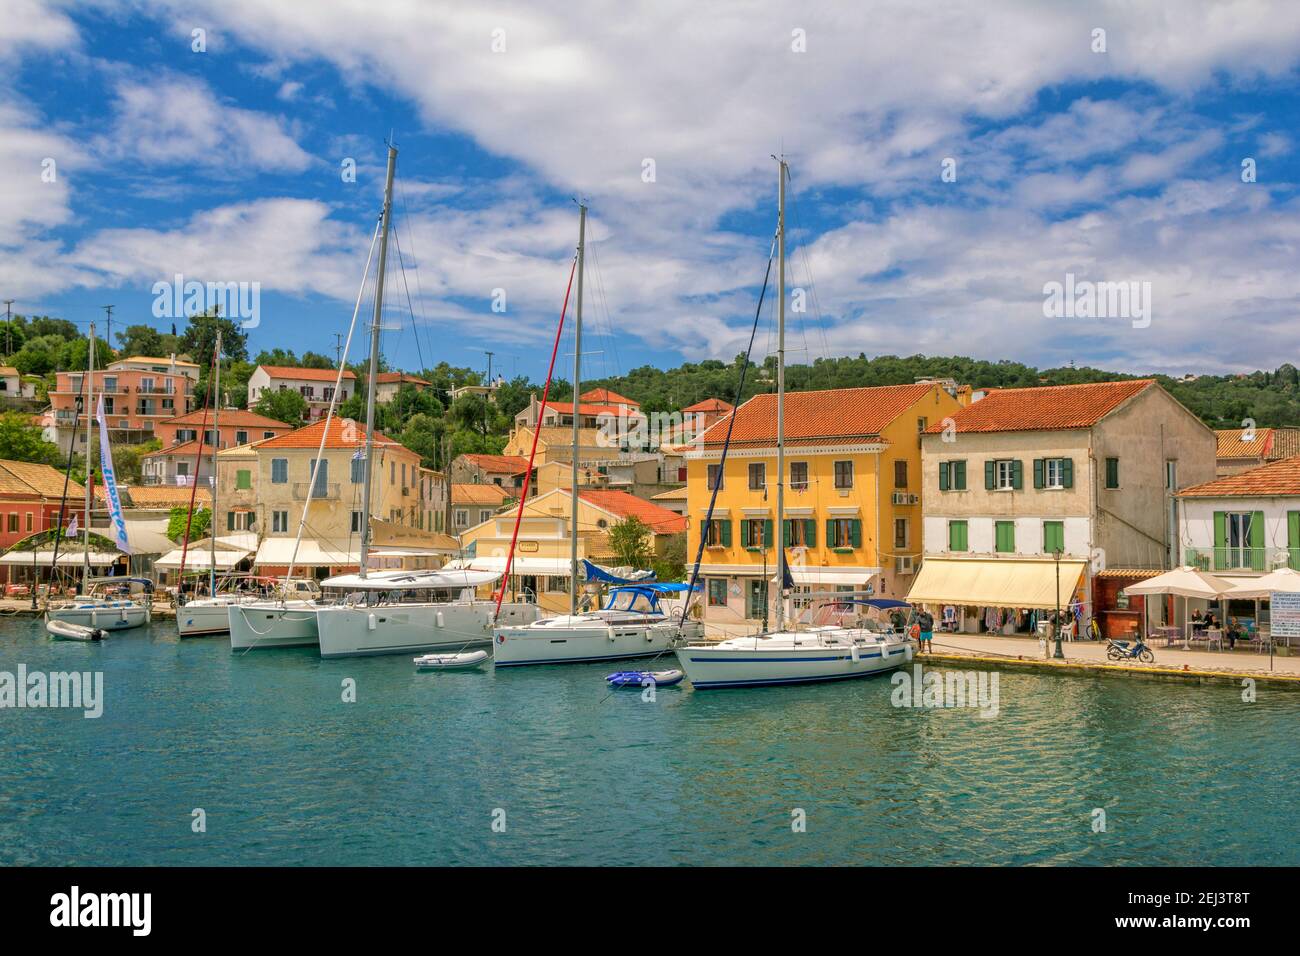 Ile de Paxos, Grèce- 7 mai 2019: Vue sur le magnifique port de Loggos - baie de mer avec l'eau turquoise calme, les navires et les yachts vieilles maisons colorées, ciel bleu Banque D'Images